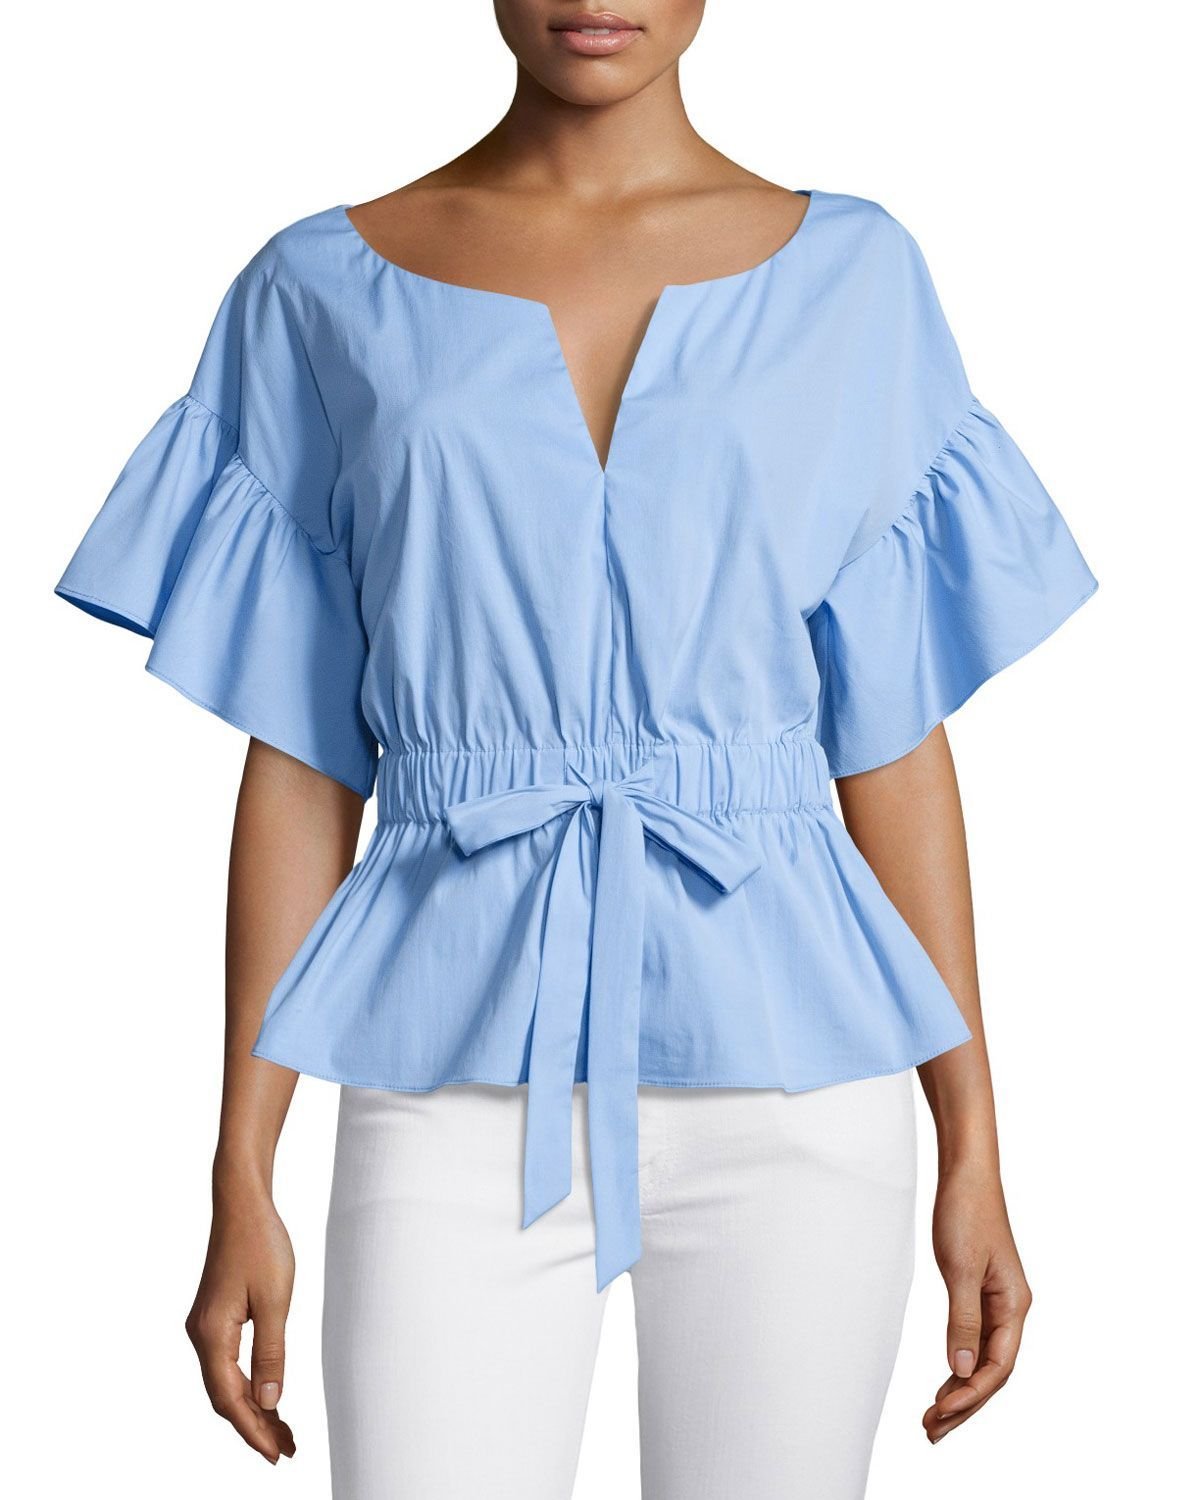 Легкая летняя рубашка. Летние блузки. Летняя блузка с воланами. Летние блузки для женщин. Легкие летние блузки.